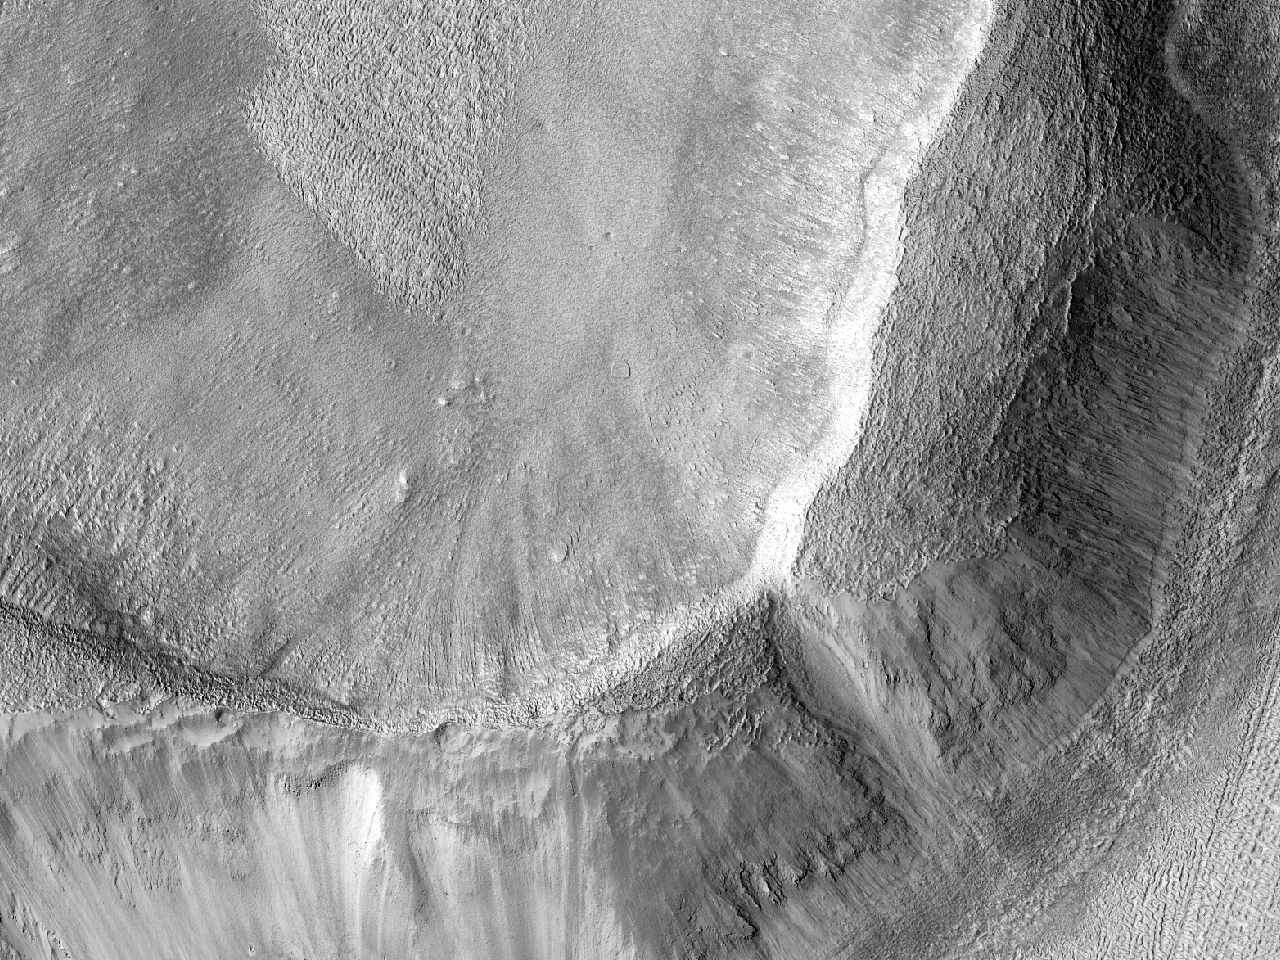 Mamers Valles’in tabanı ve duvarının yakınında yer alan iki krater